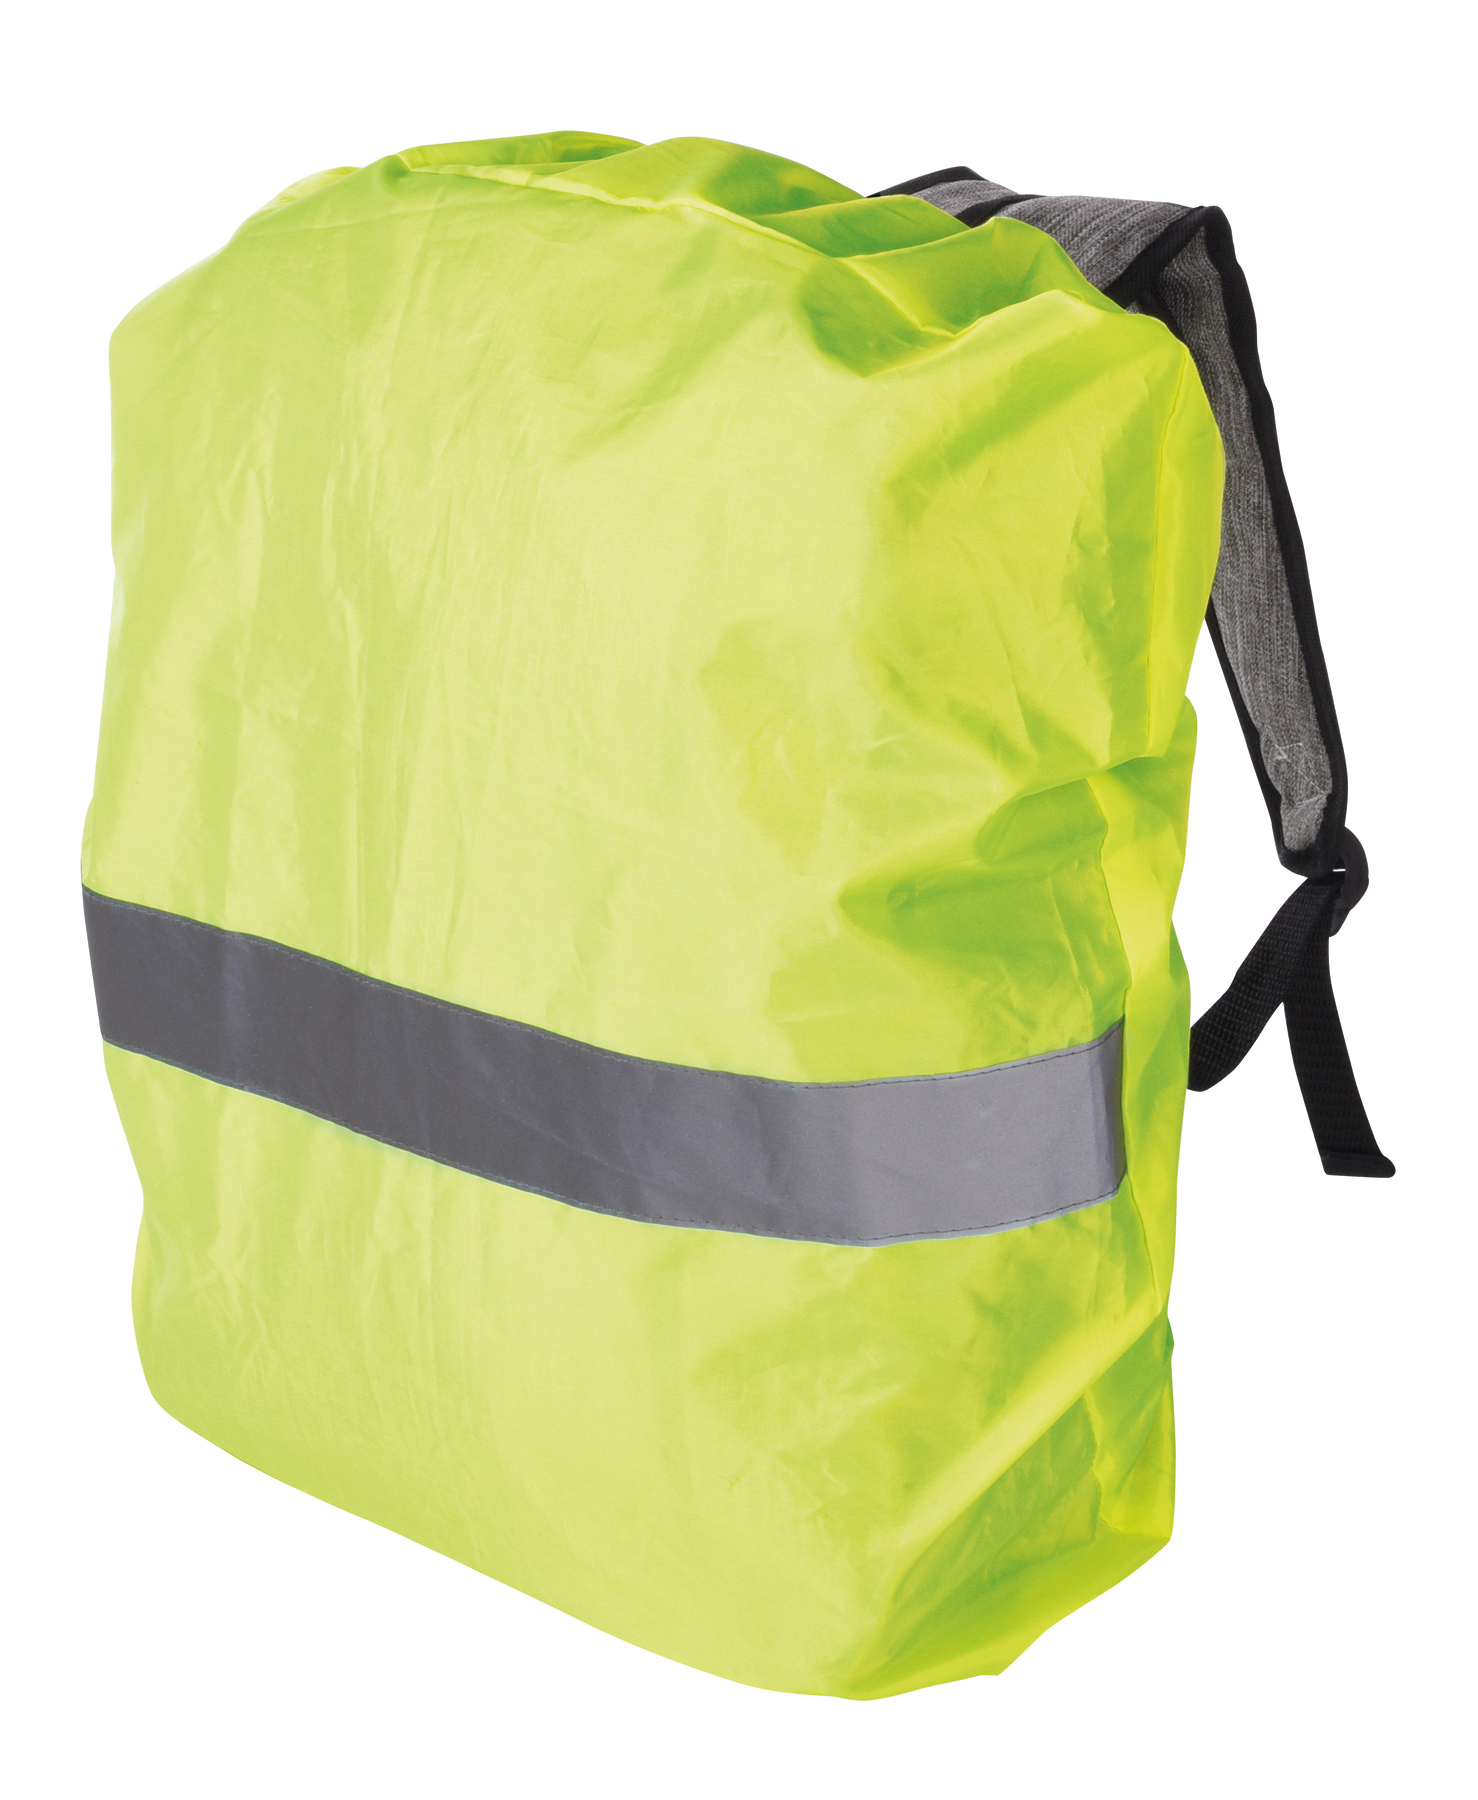 Pláštěnka na batohy a školní tašku RAINY DAYS - žlutá